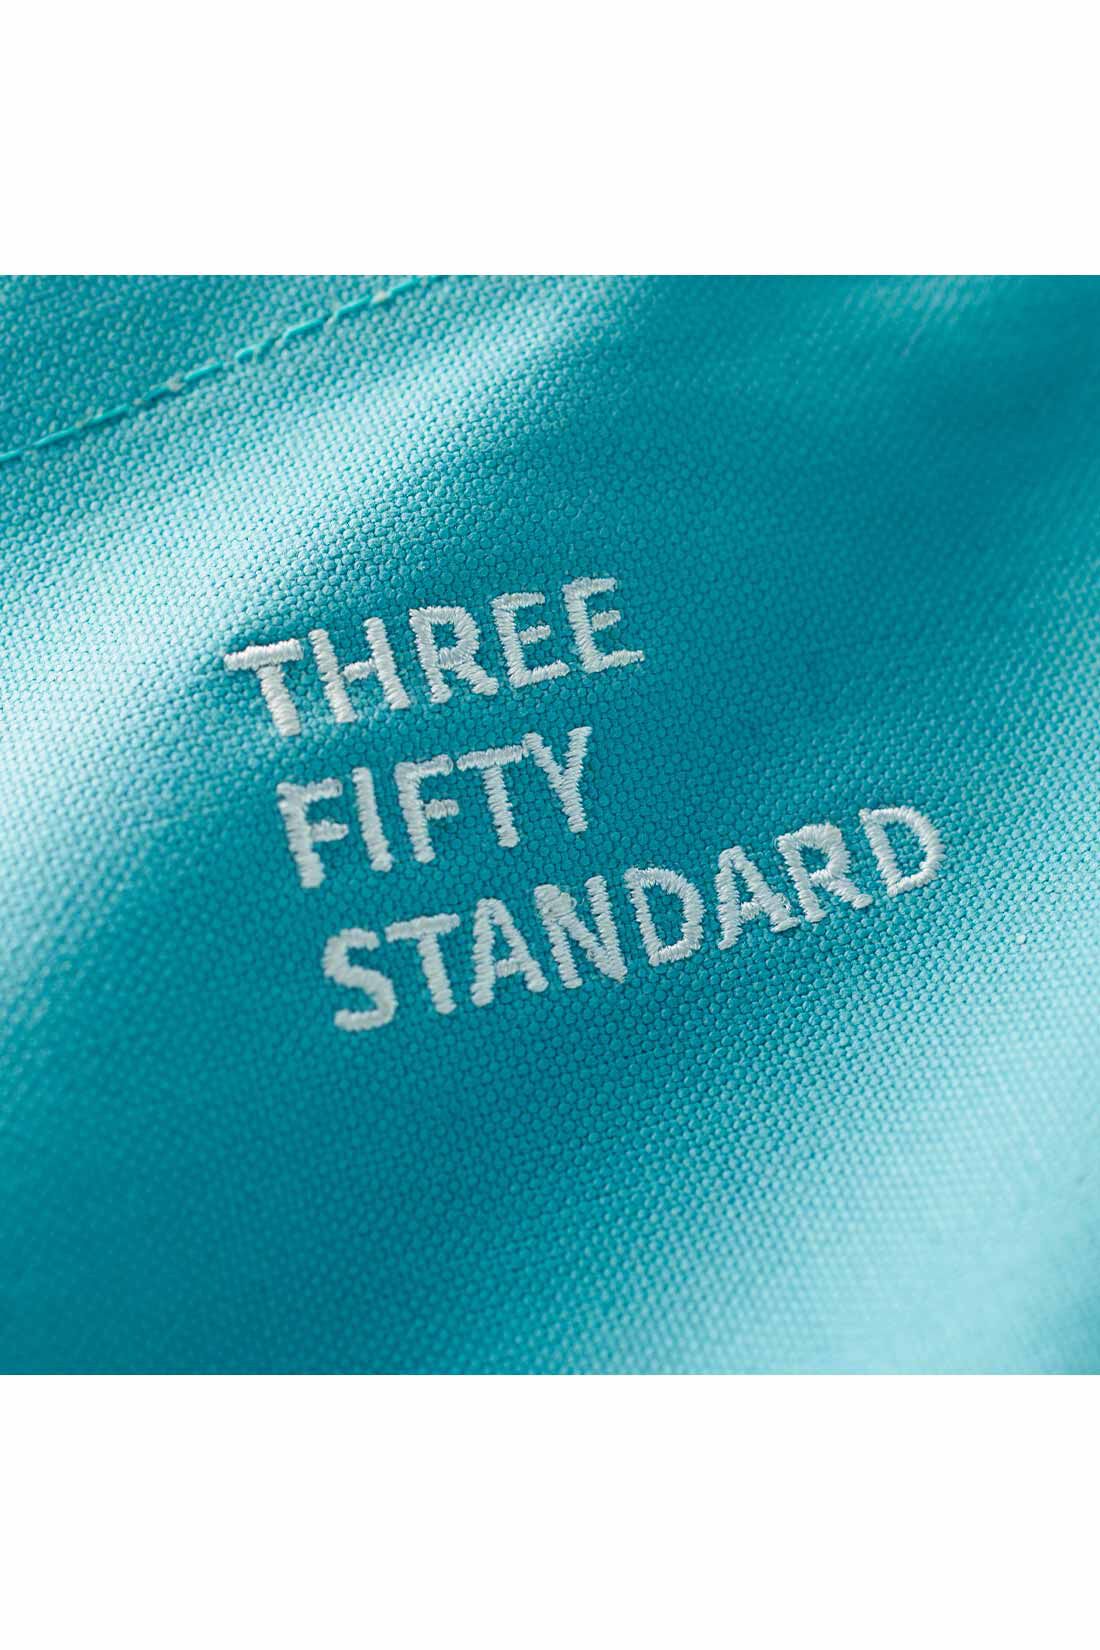 THREE FIFTY STANDARD|THREE FIFTY STANDARD カラーキャンバス素材のショルダートートバッグ〈ブルー〉